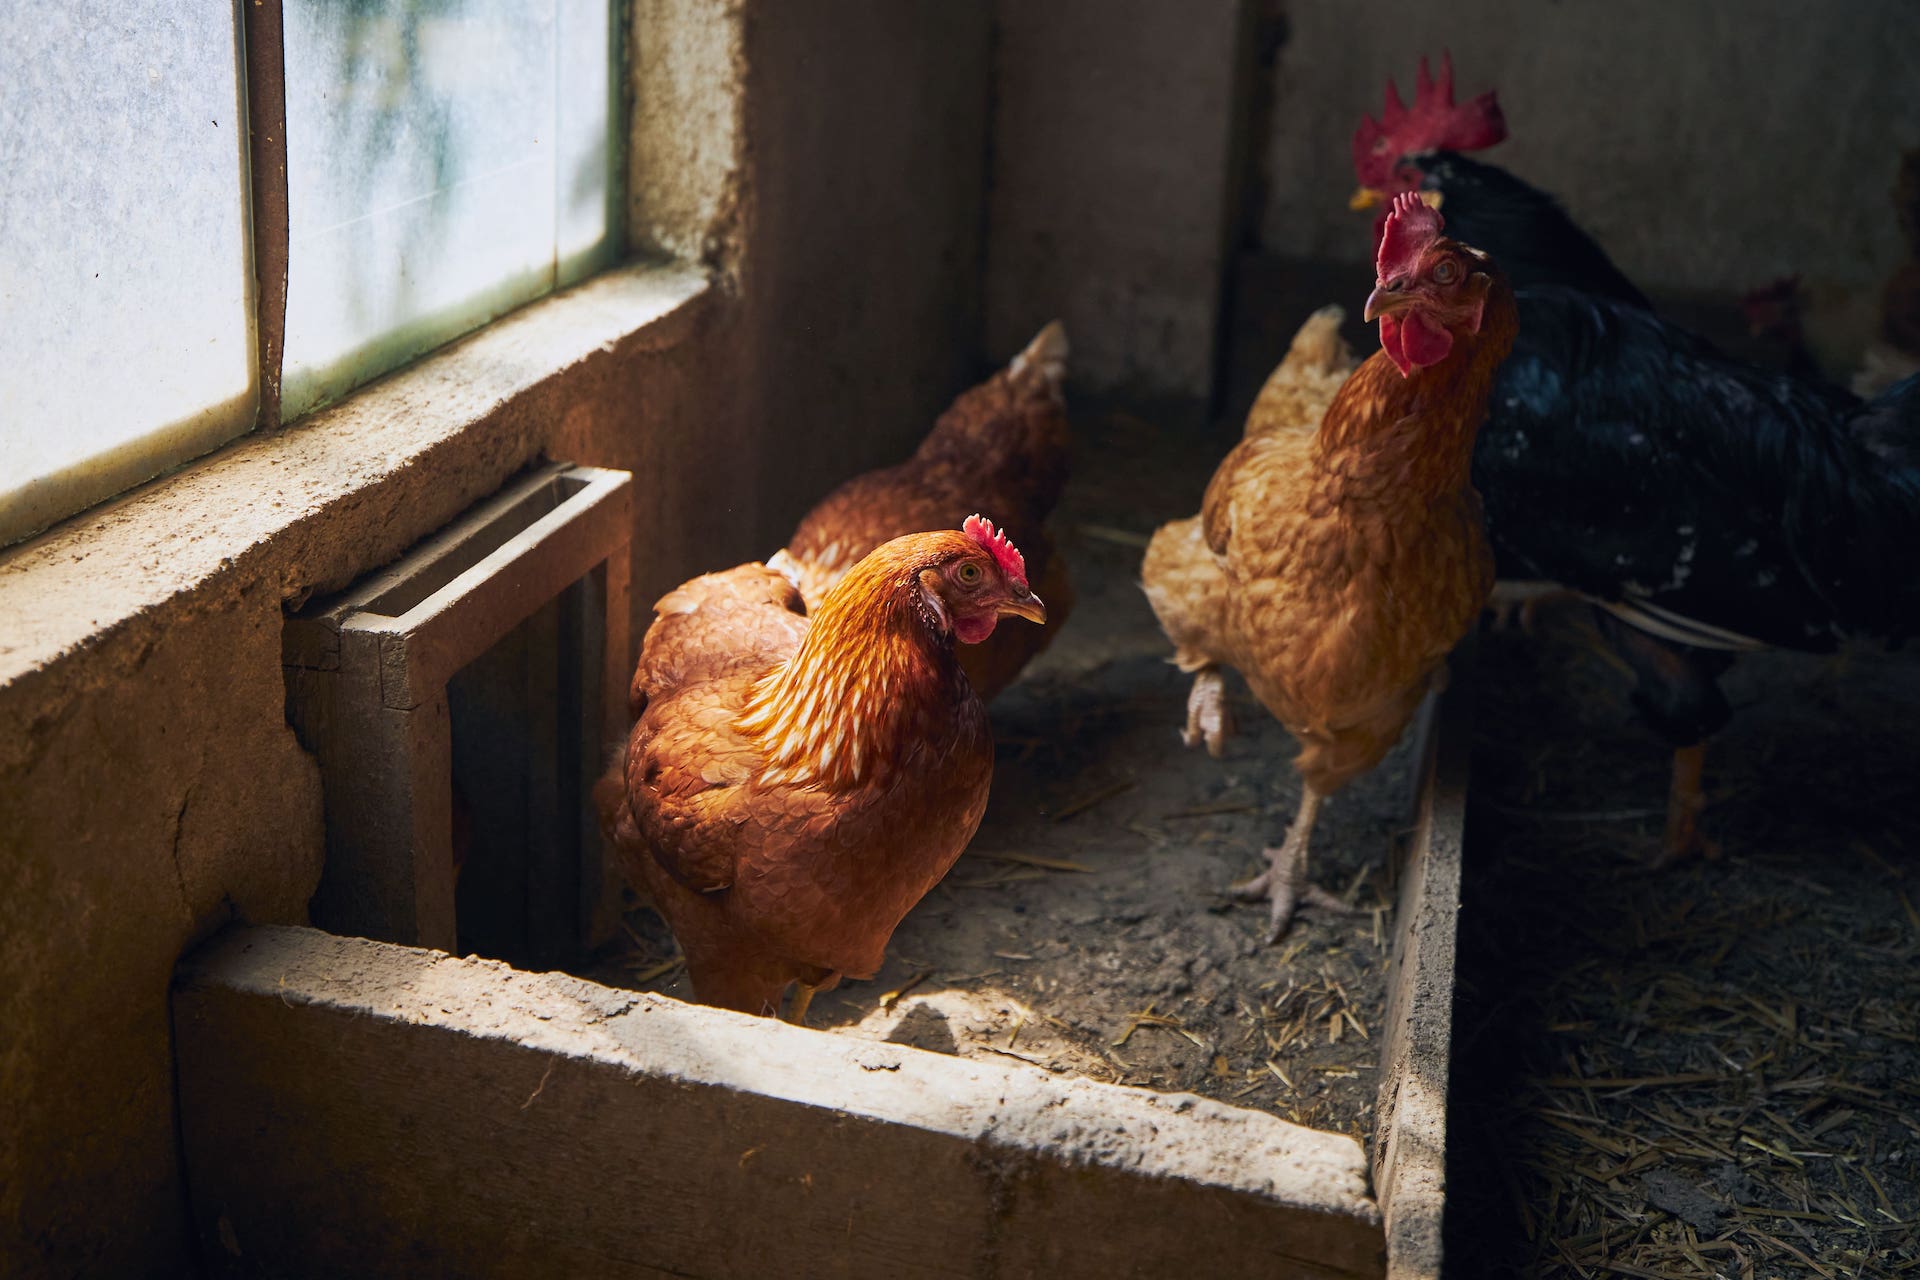 due galline in allevamento per evitare inquinamento alimentare